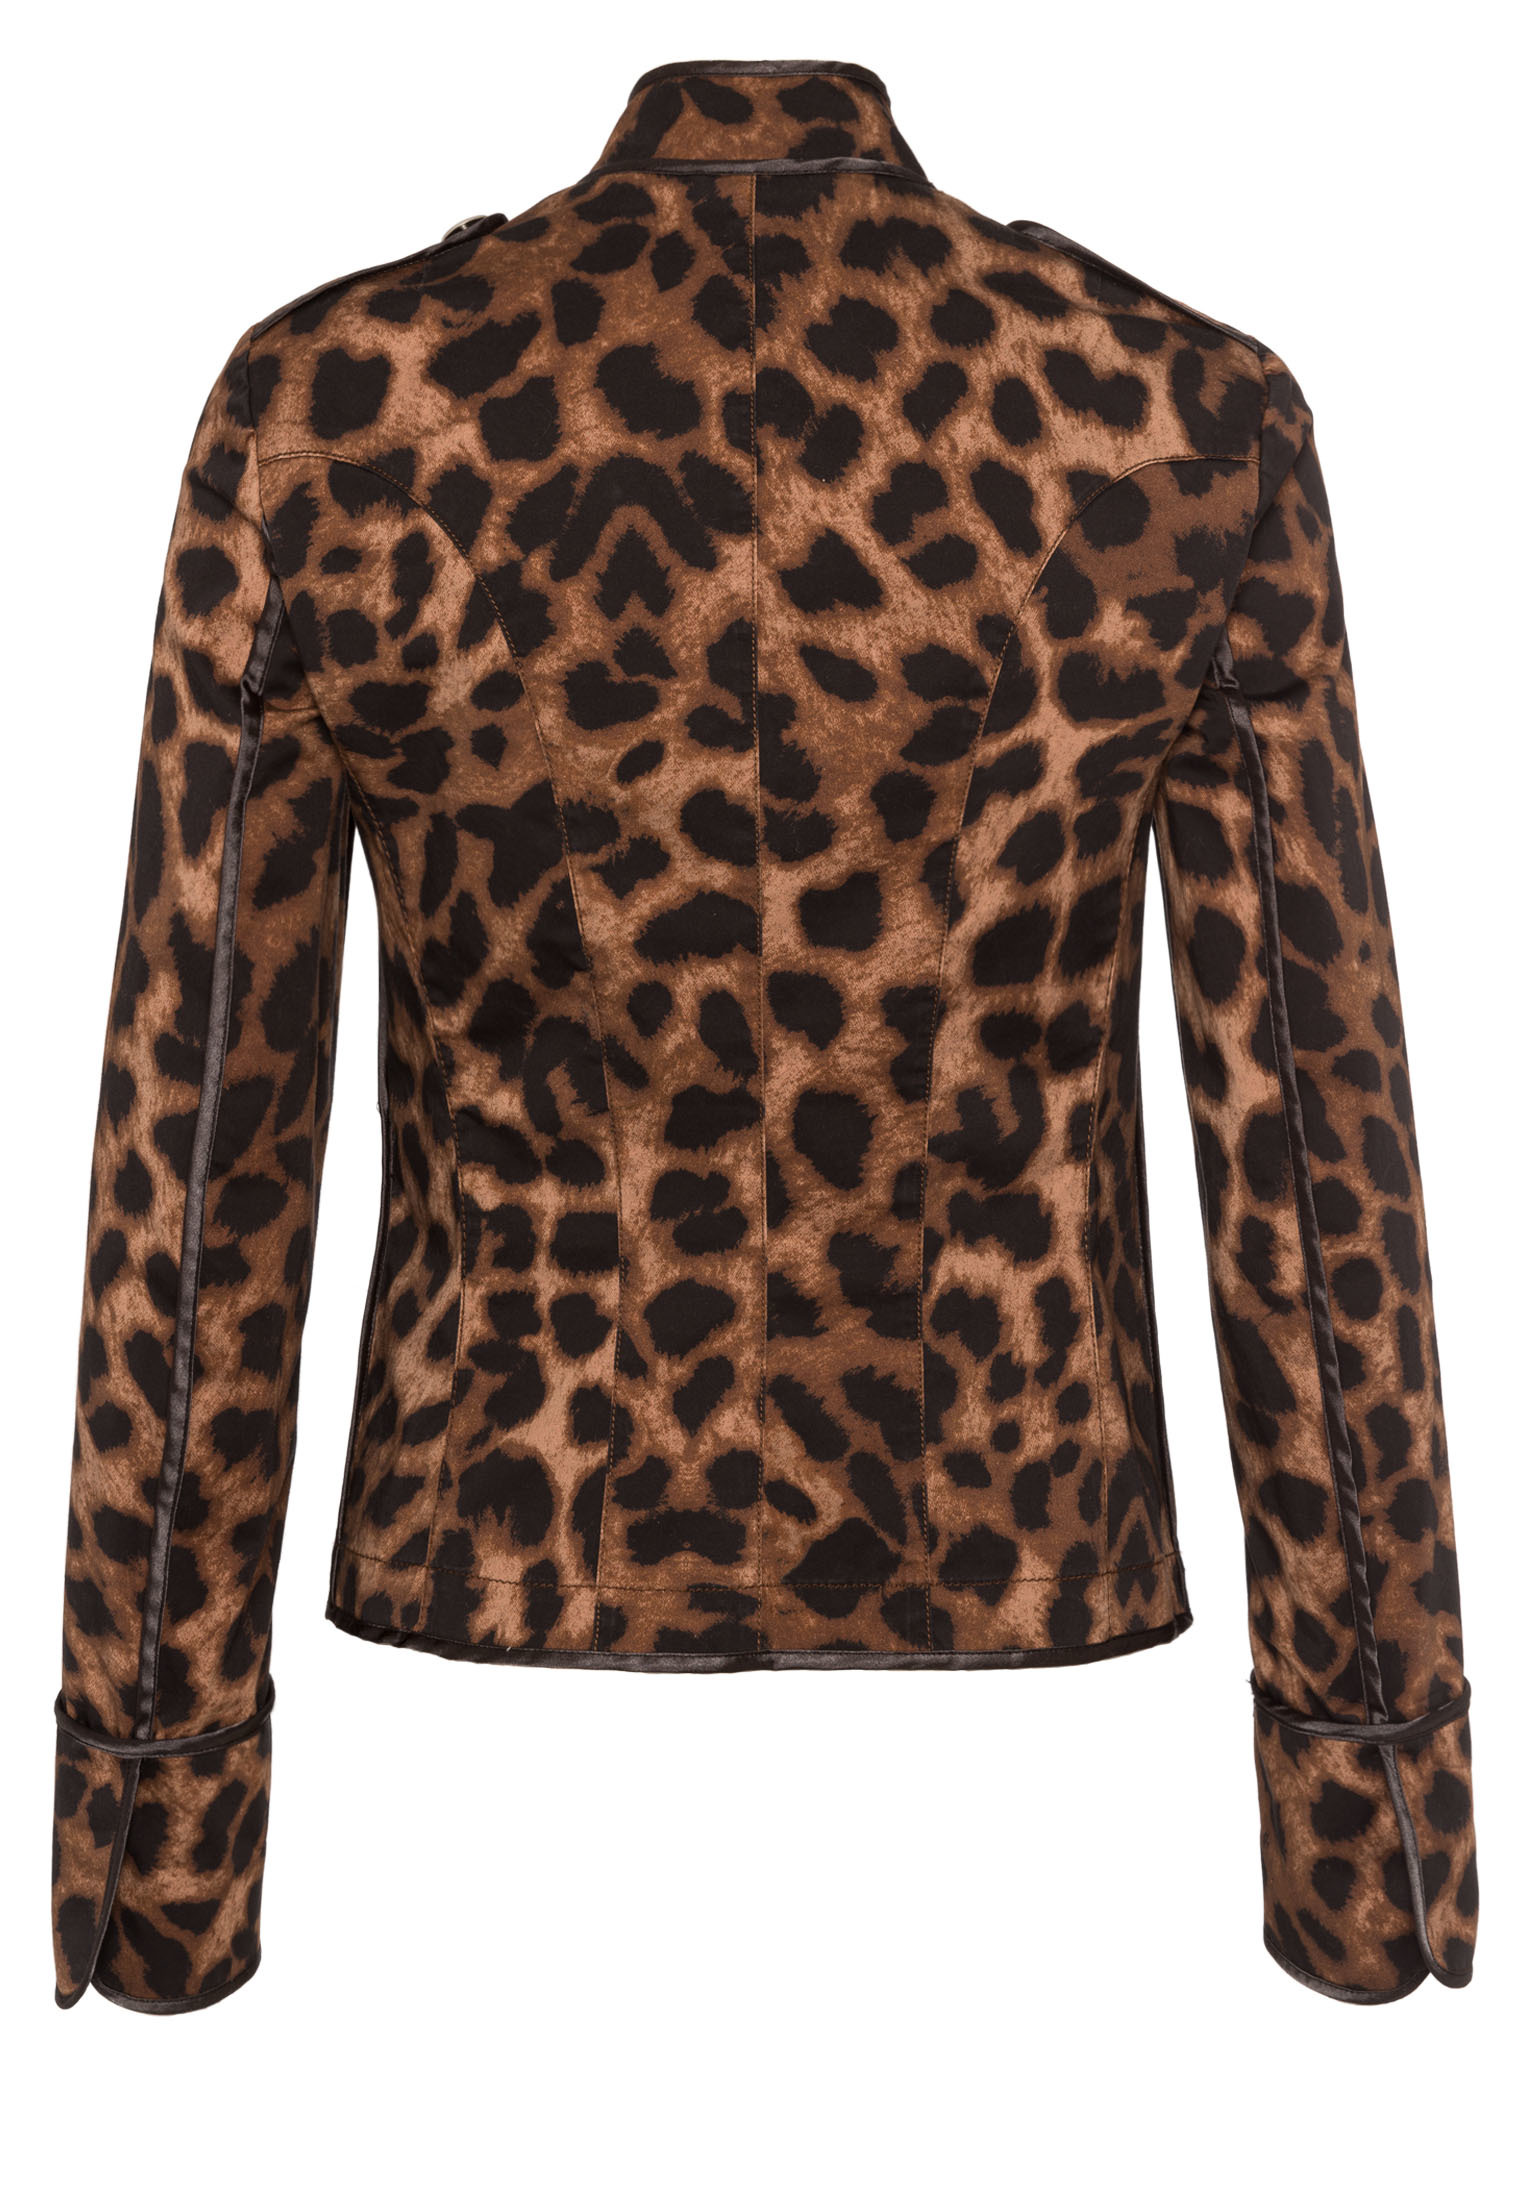 Women’s jacket with leopard print | Blazer & Jackets | Fashion